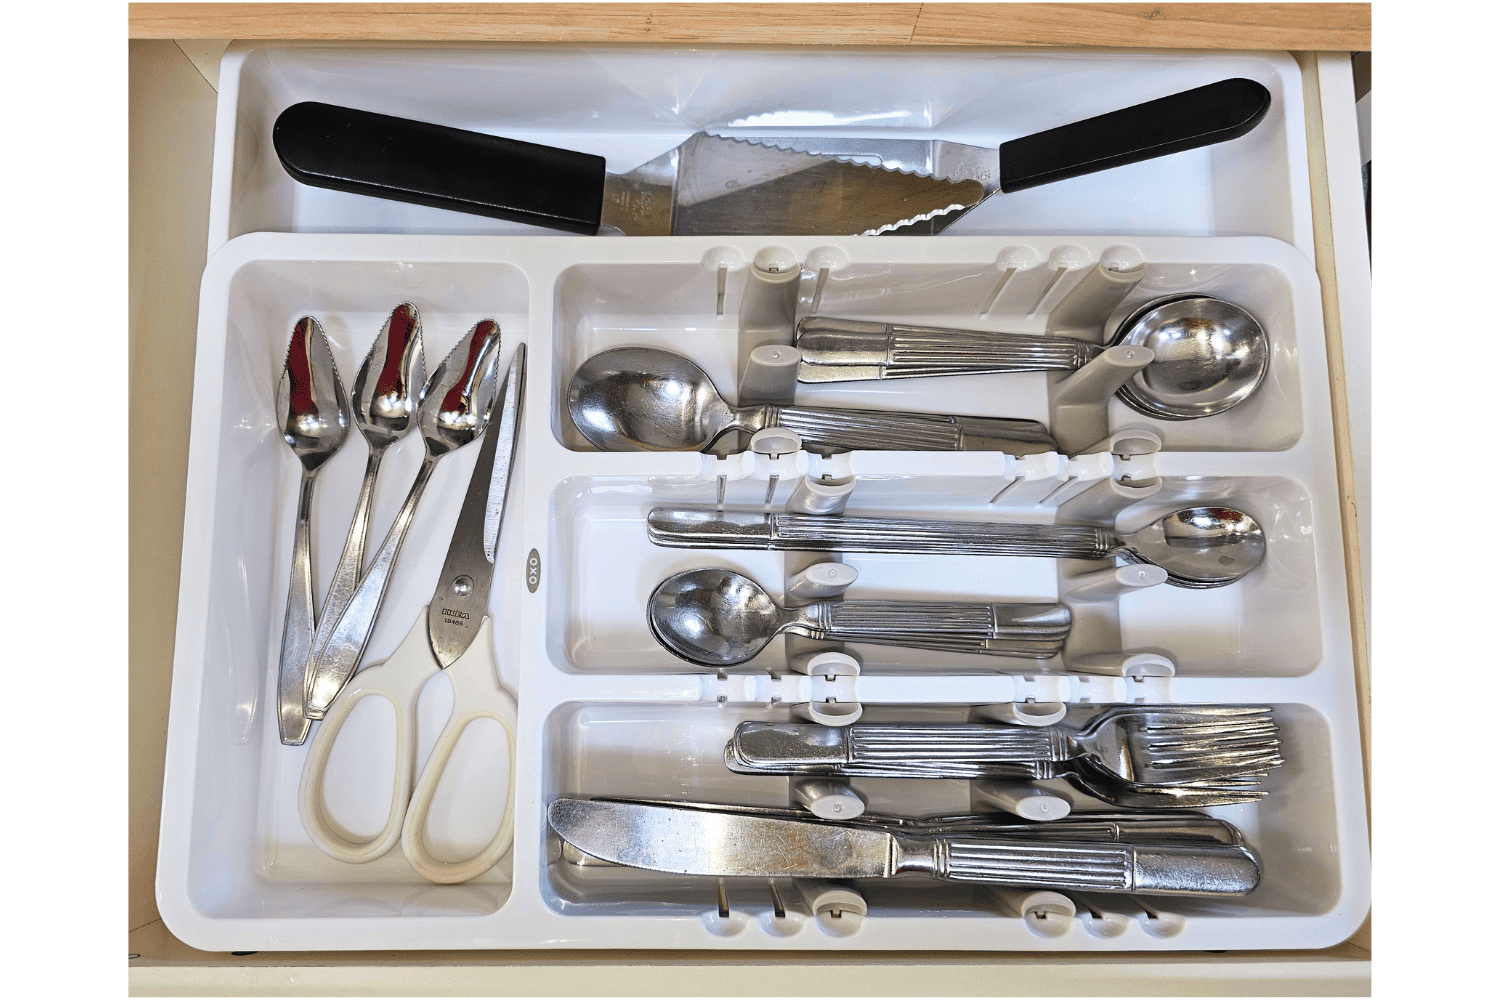 organize kitchen drawers<br>
